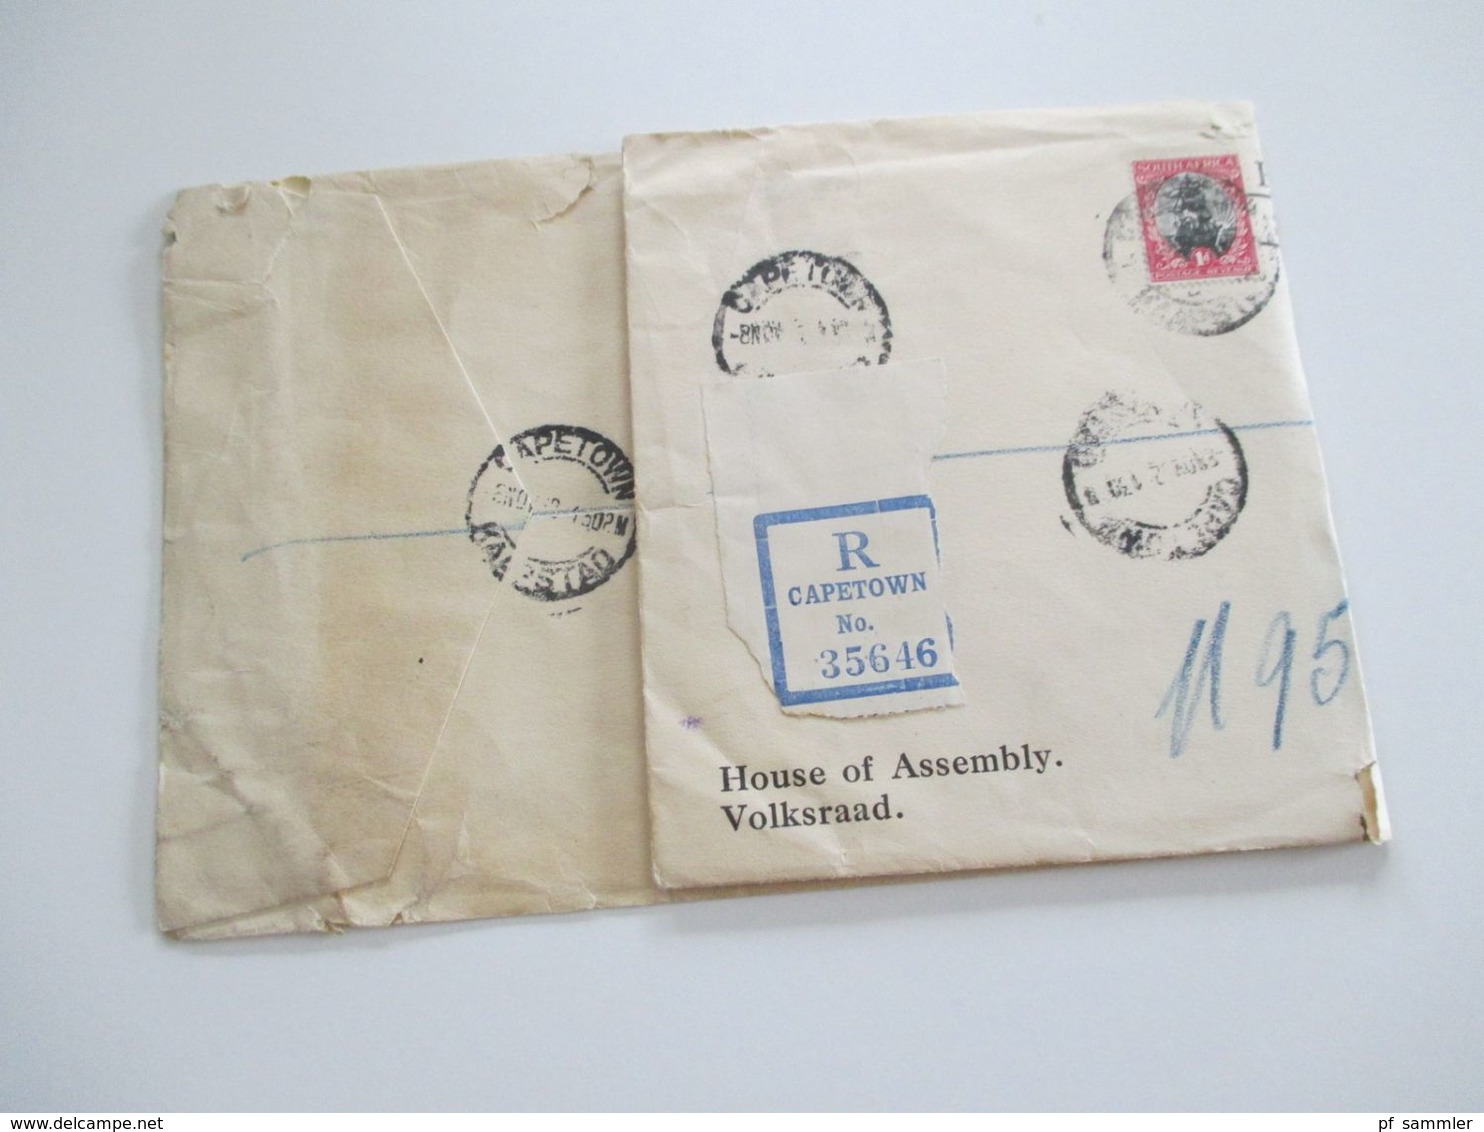 Südafrika 1932 Einschreiben registered letter Capetown - Pretoria Marken mit Aufdruck Official / Offisieel